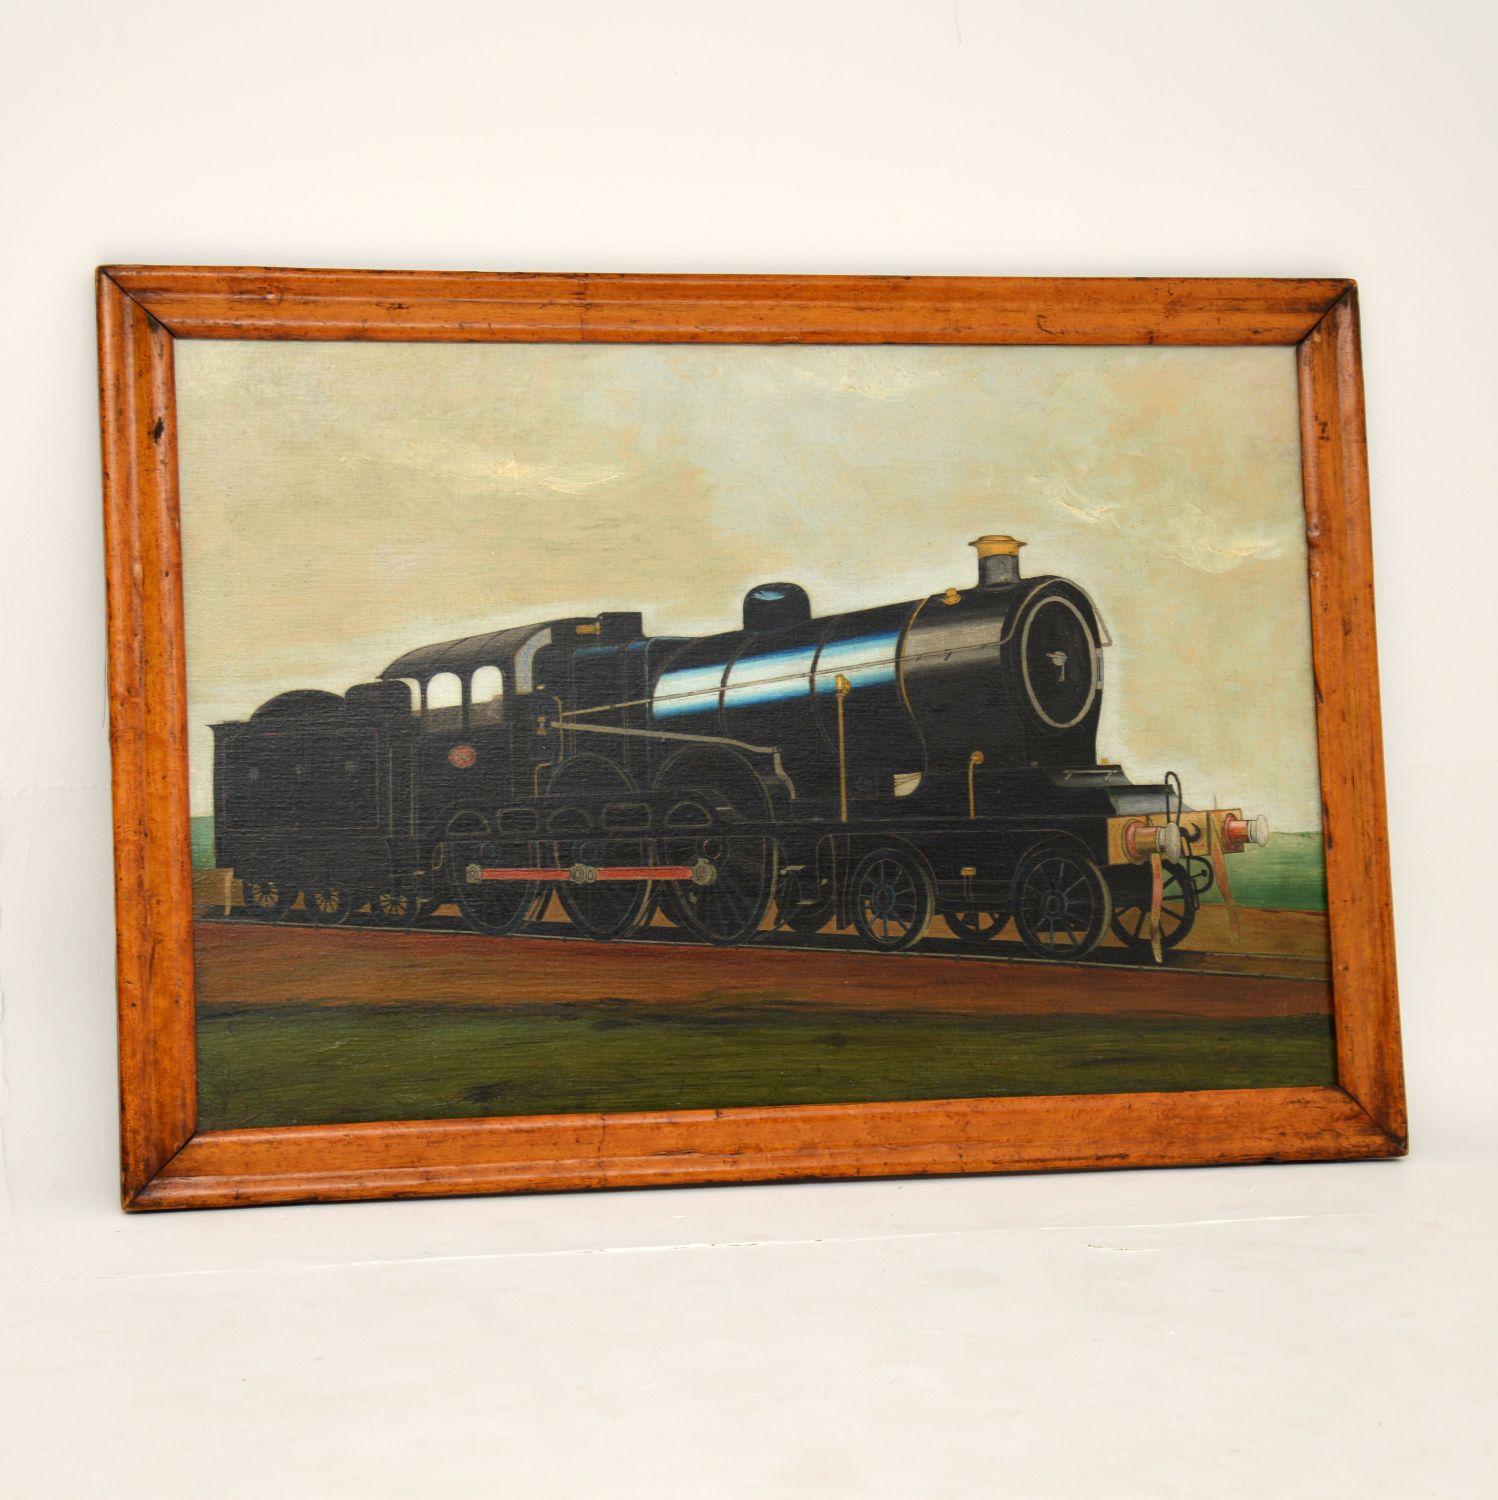 Une belle peinture à l'huile victorienne ancienne d'un train à vapeur que je daterais des environs des années 1880.

Il s'agit d'un sujet charmant et d'une peinture magnifiquement exécutée. Les tons de couleur et les détails sont particulièrement